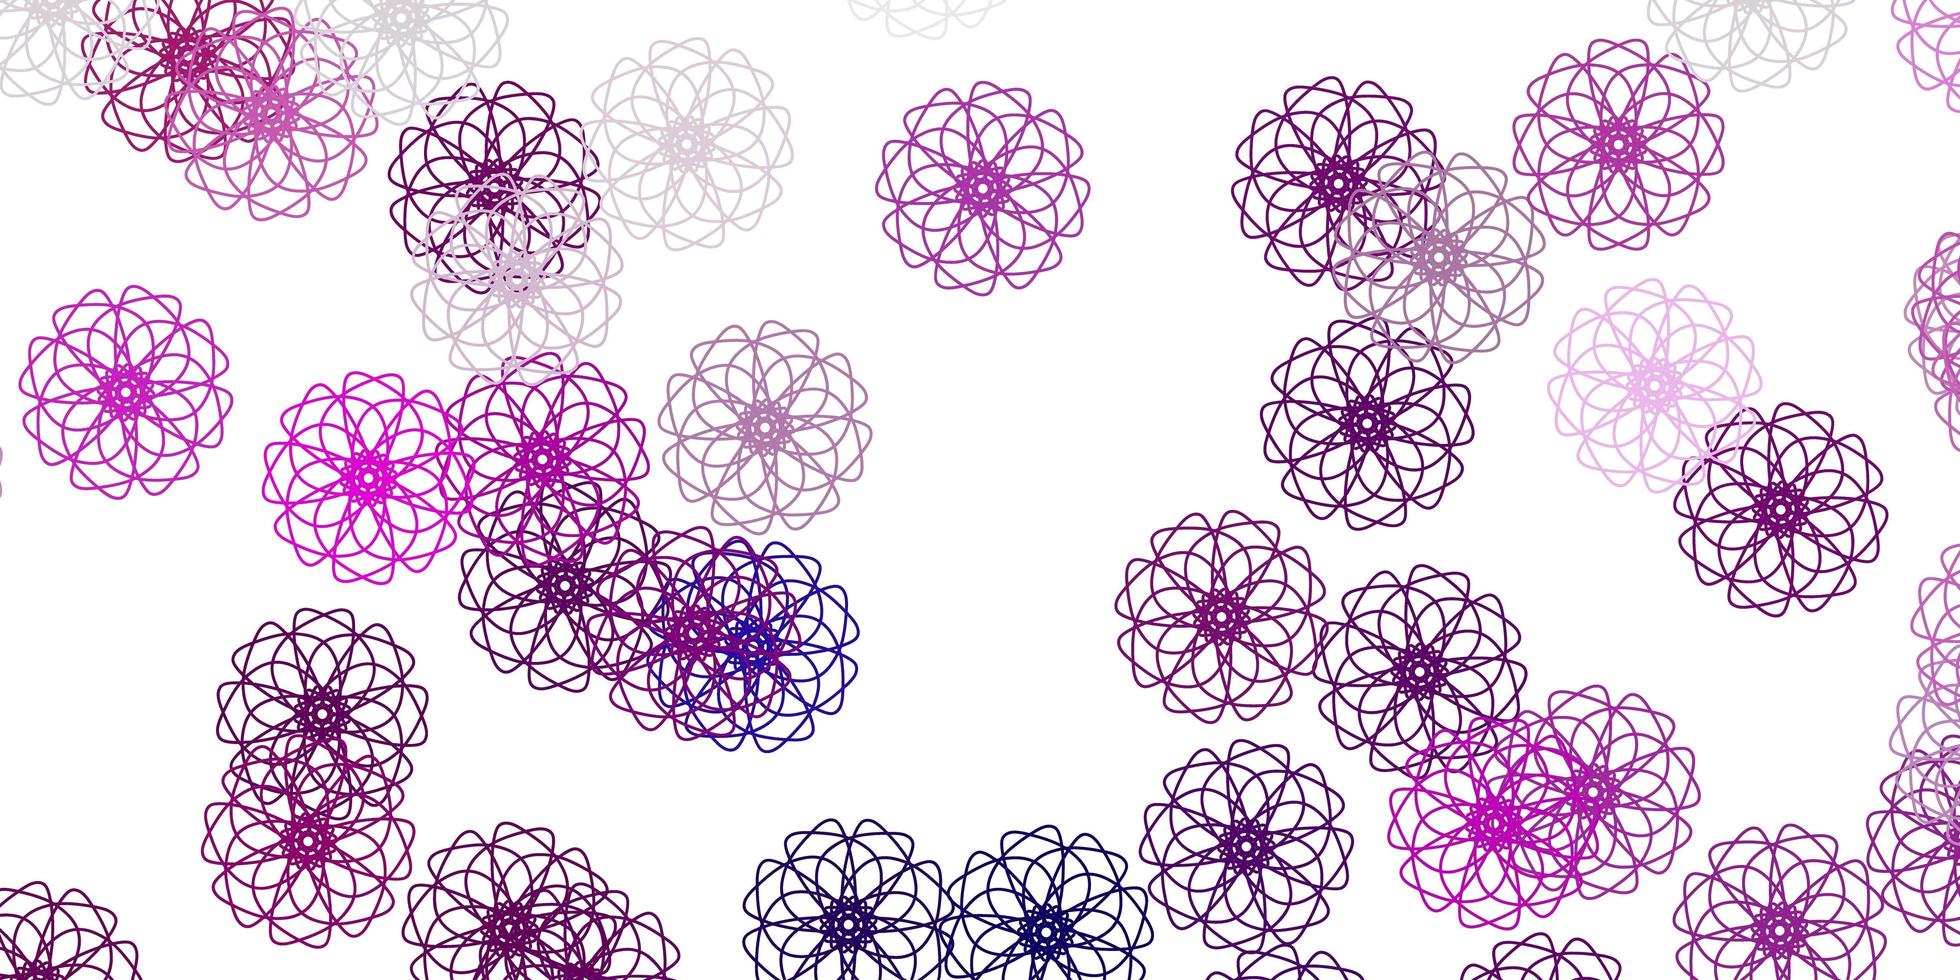 motivo doodle vettoriale rosa chiaro con fiori